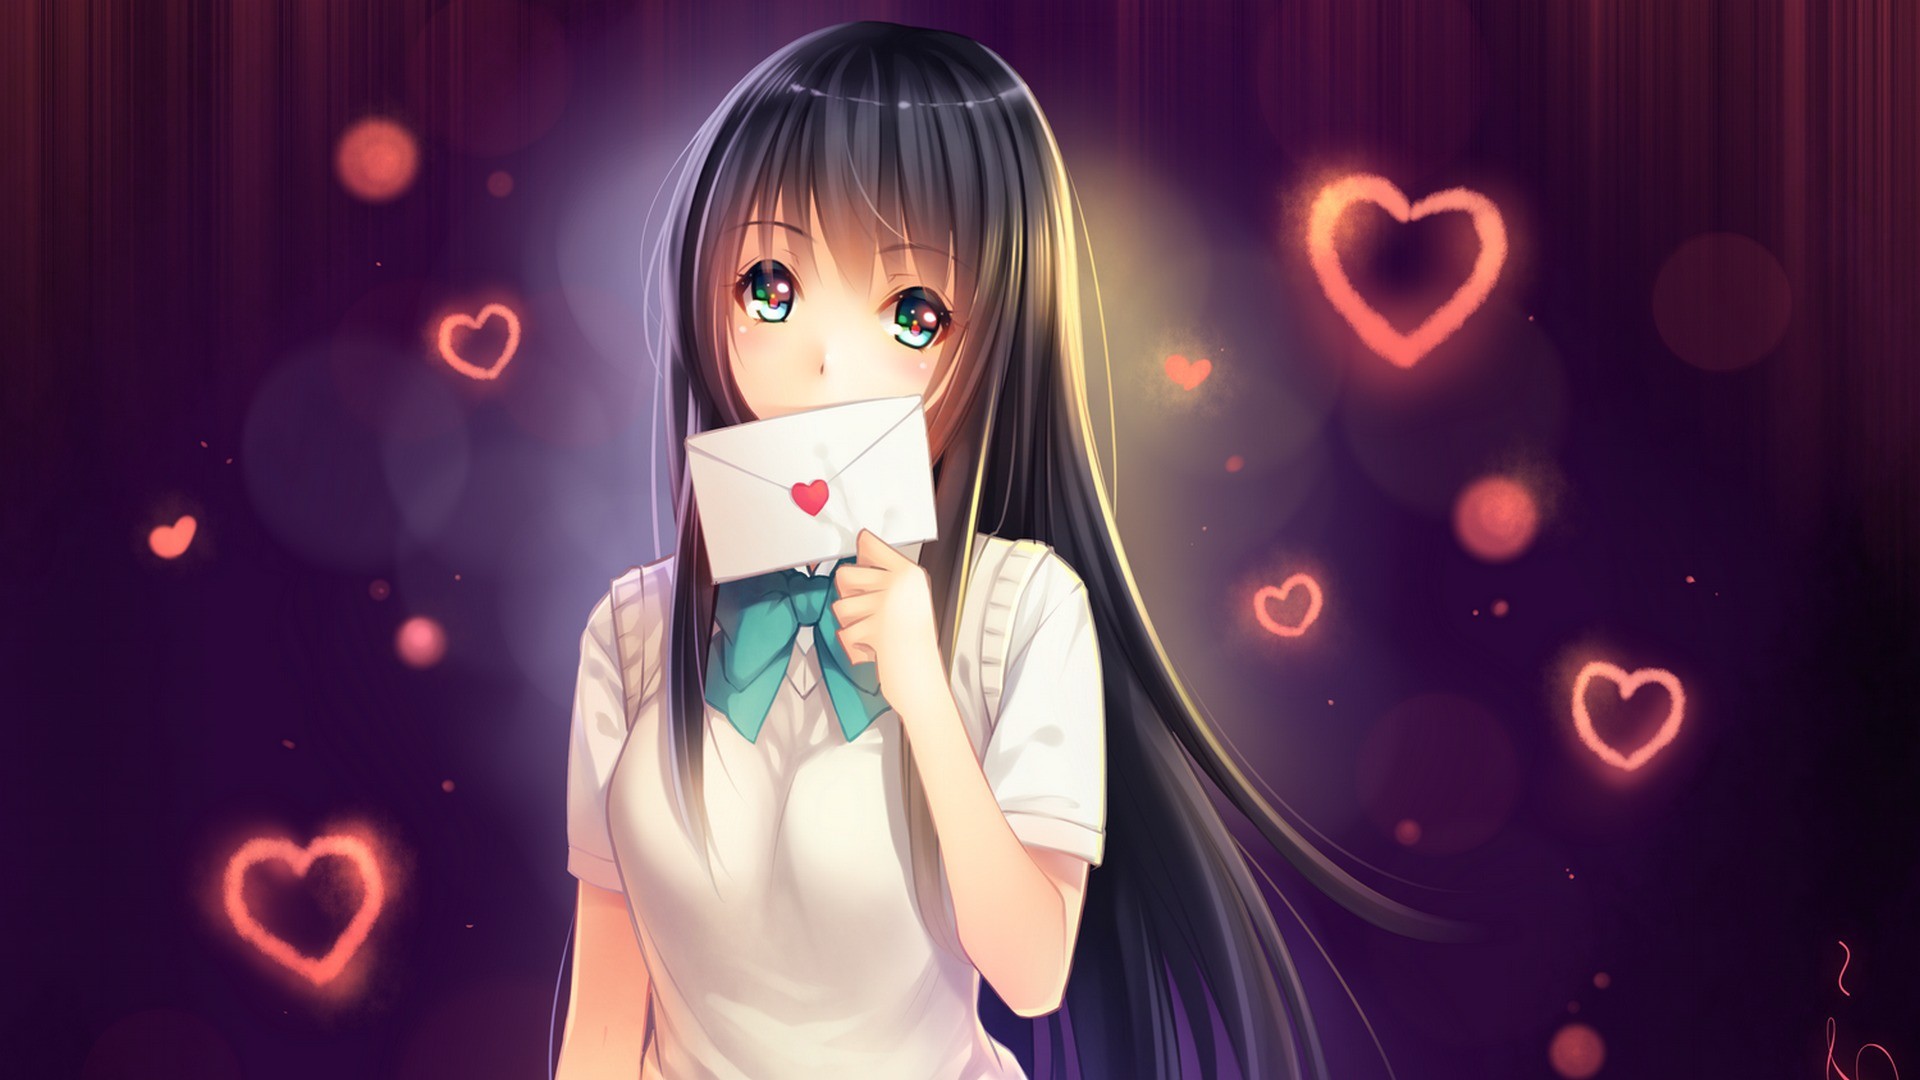 Anime 1920x1080 anime anime girls letter love long hair school uniform cropped artwork Tidsean heart (design) black hair green eyes